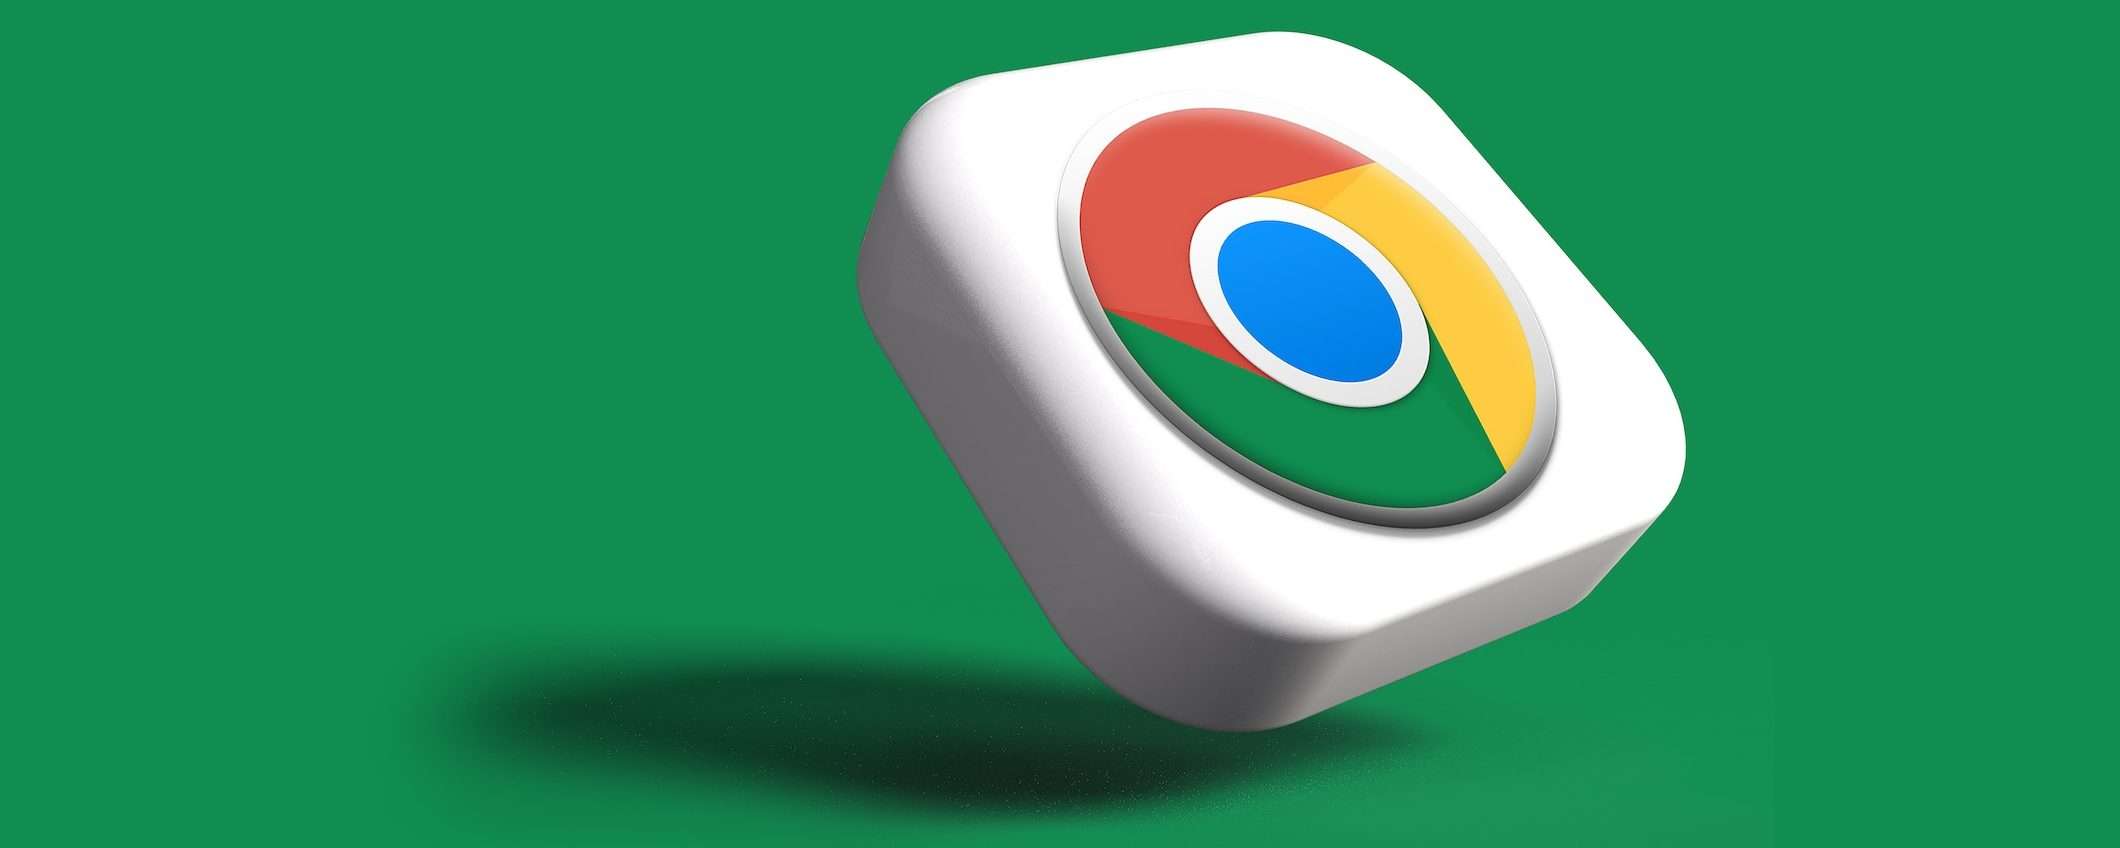 Google Chrome: salvare immagini da video è più facile